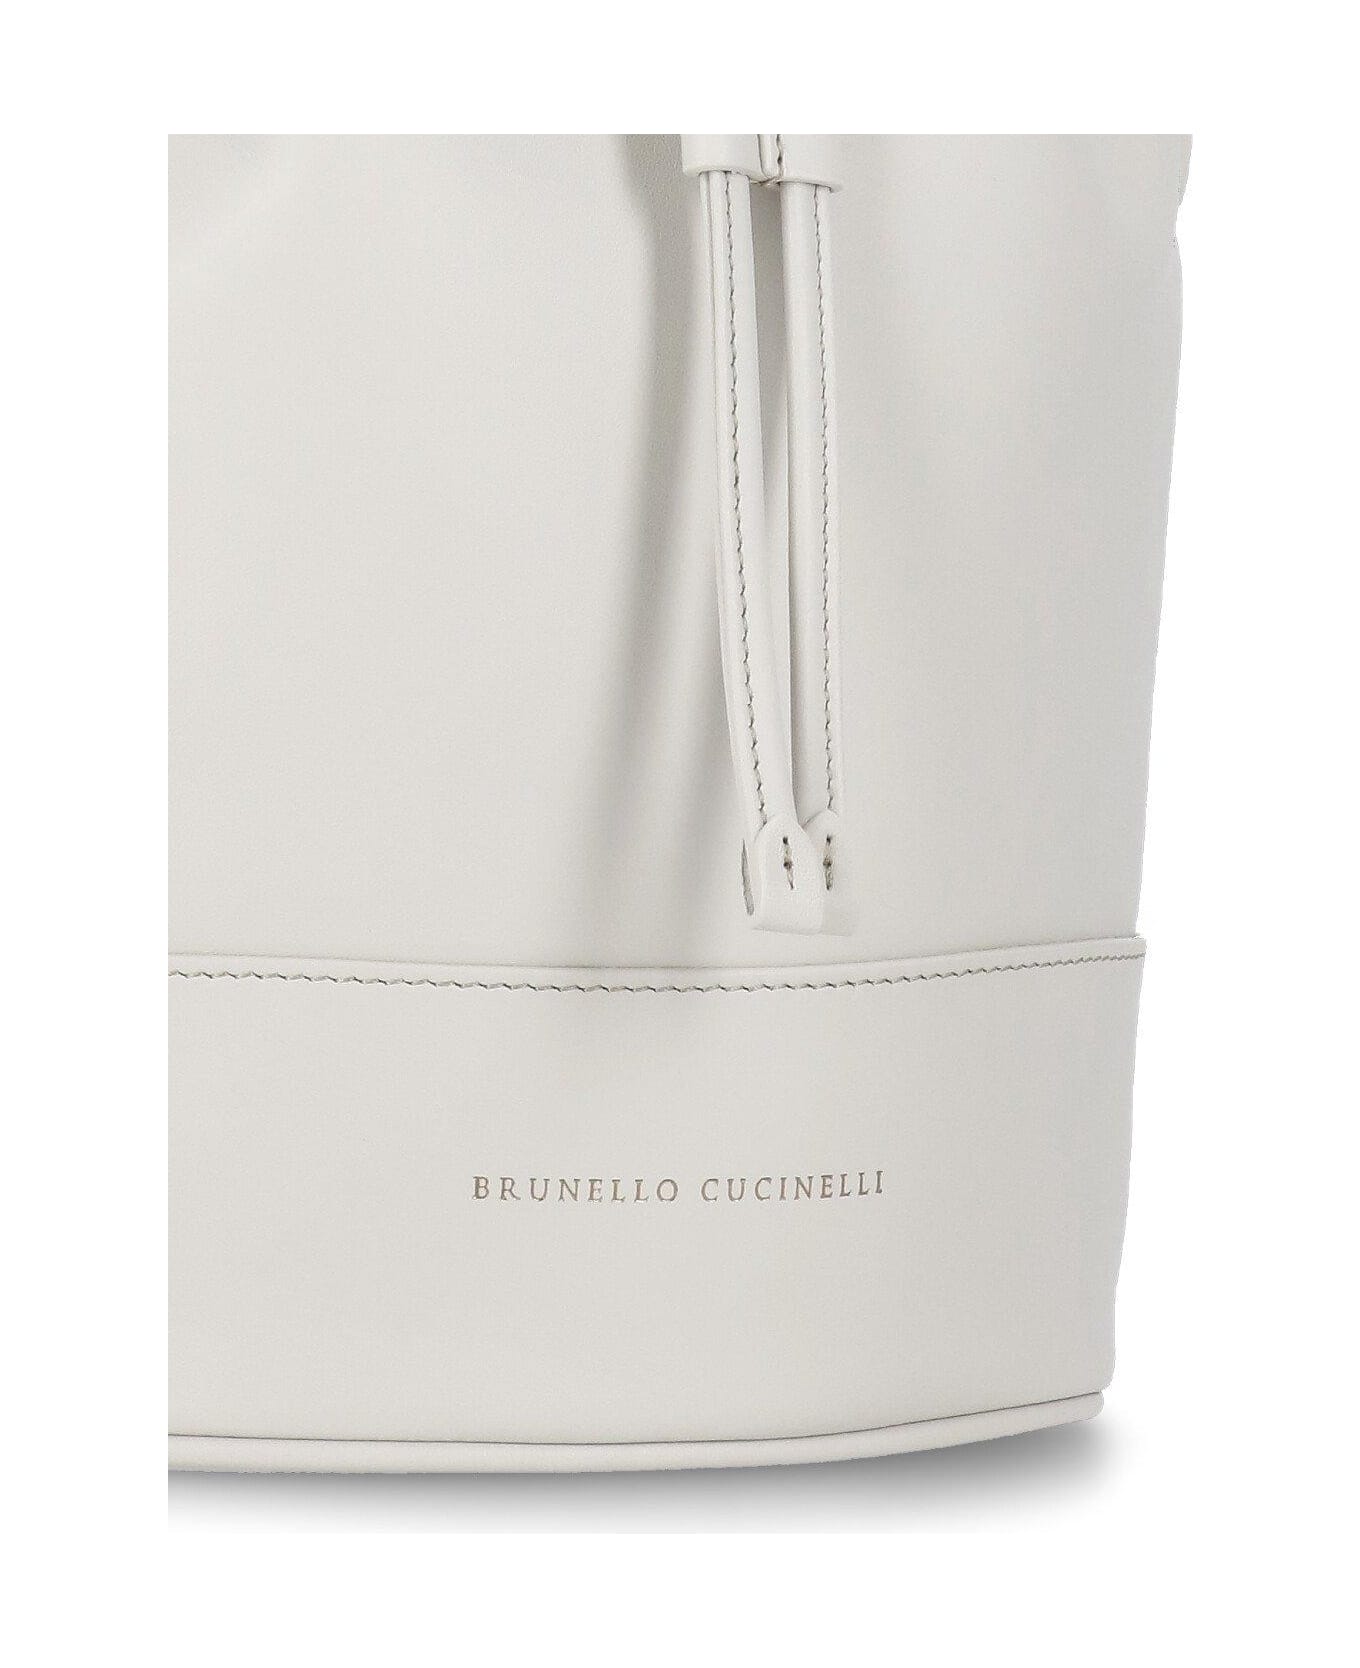 Brunello Cucinelli Monili Braided Bucket Bag - GREY トートバッグ